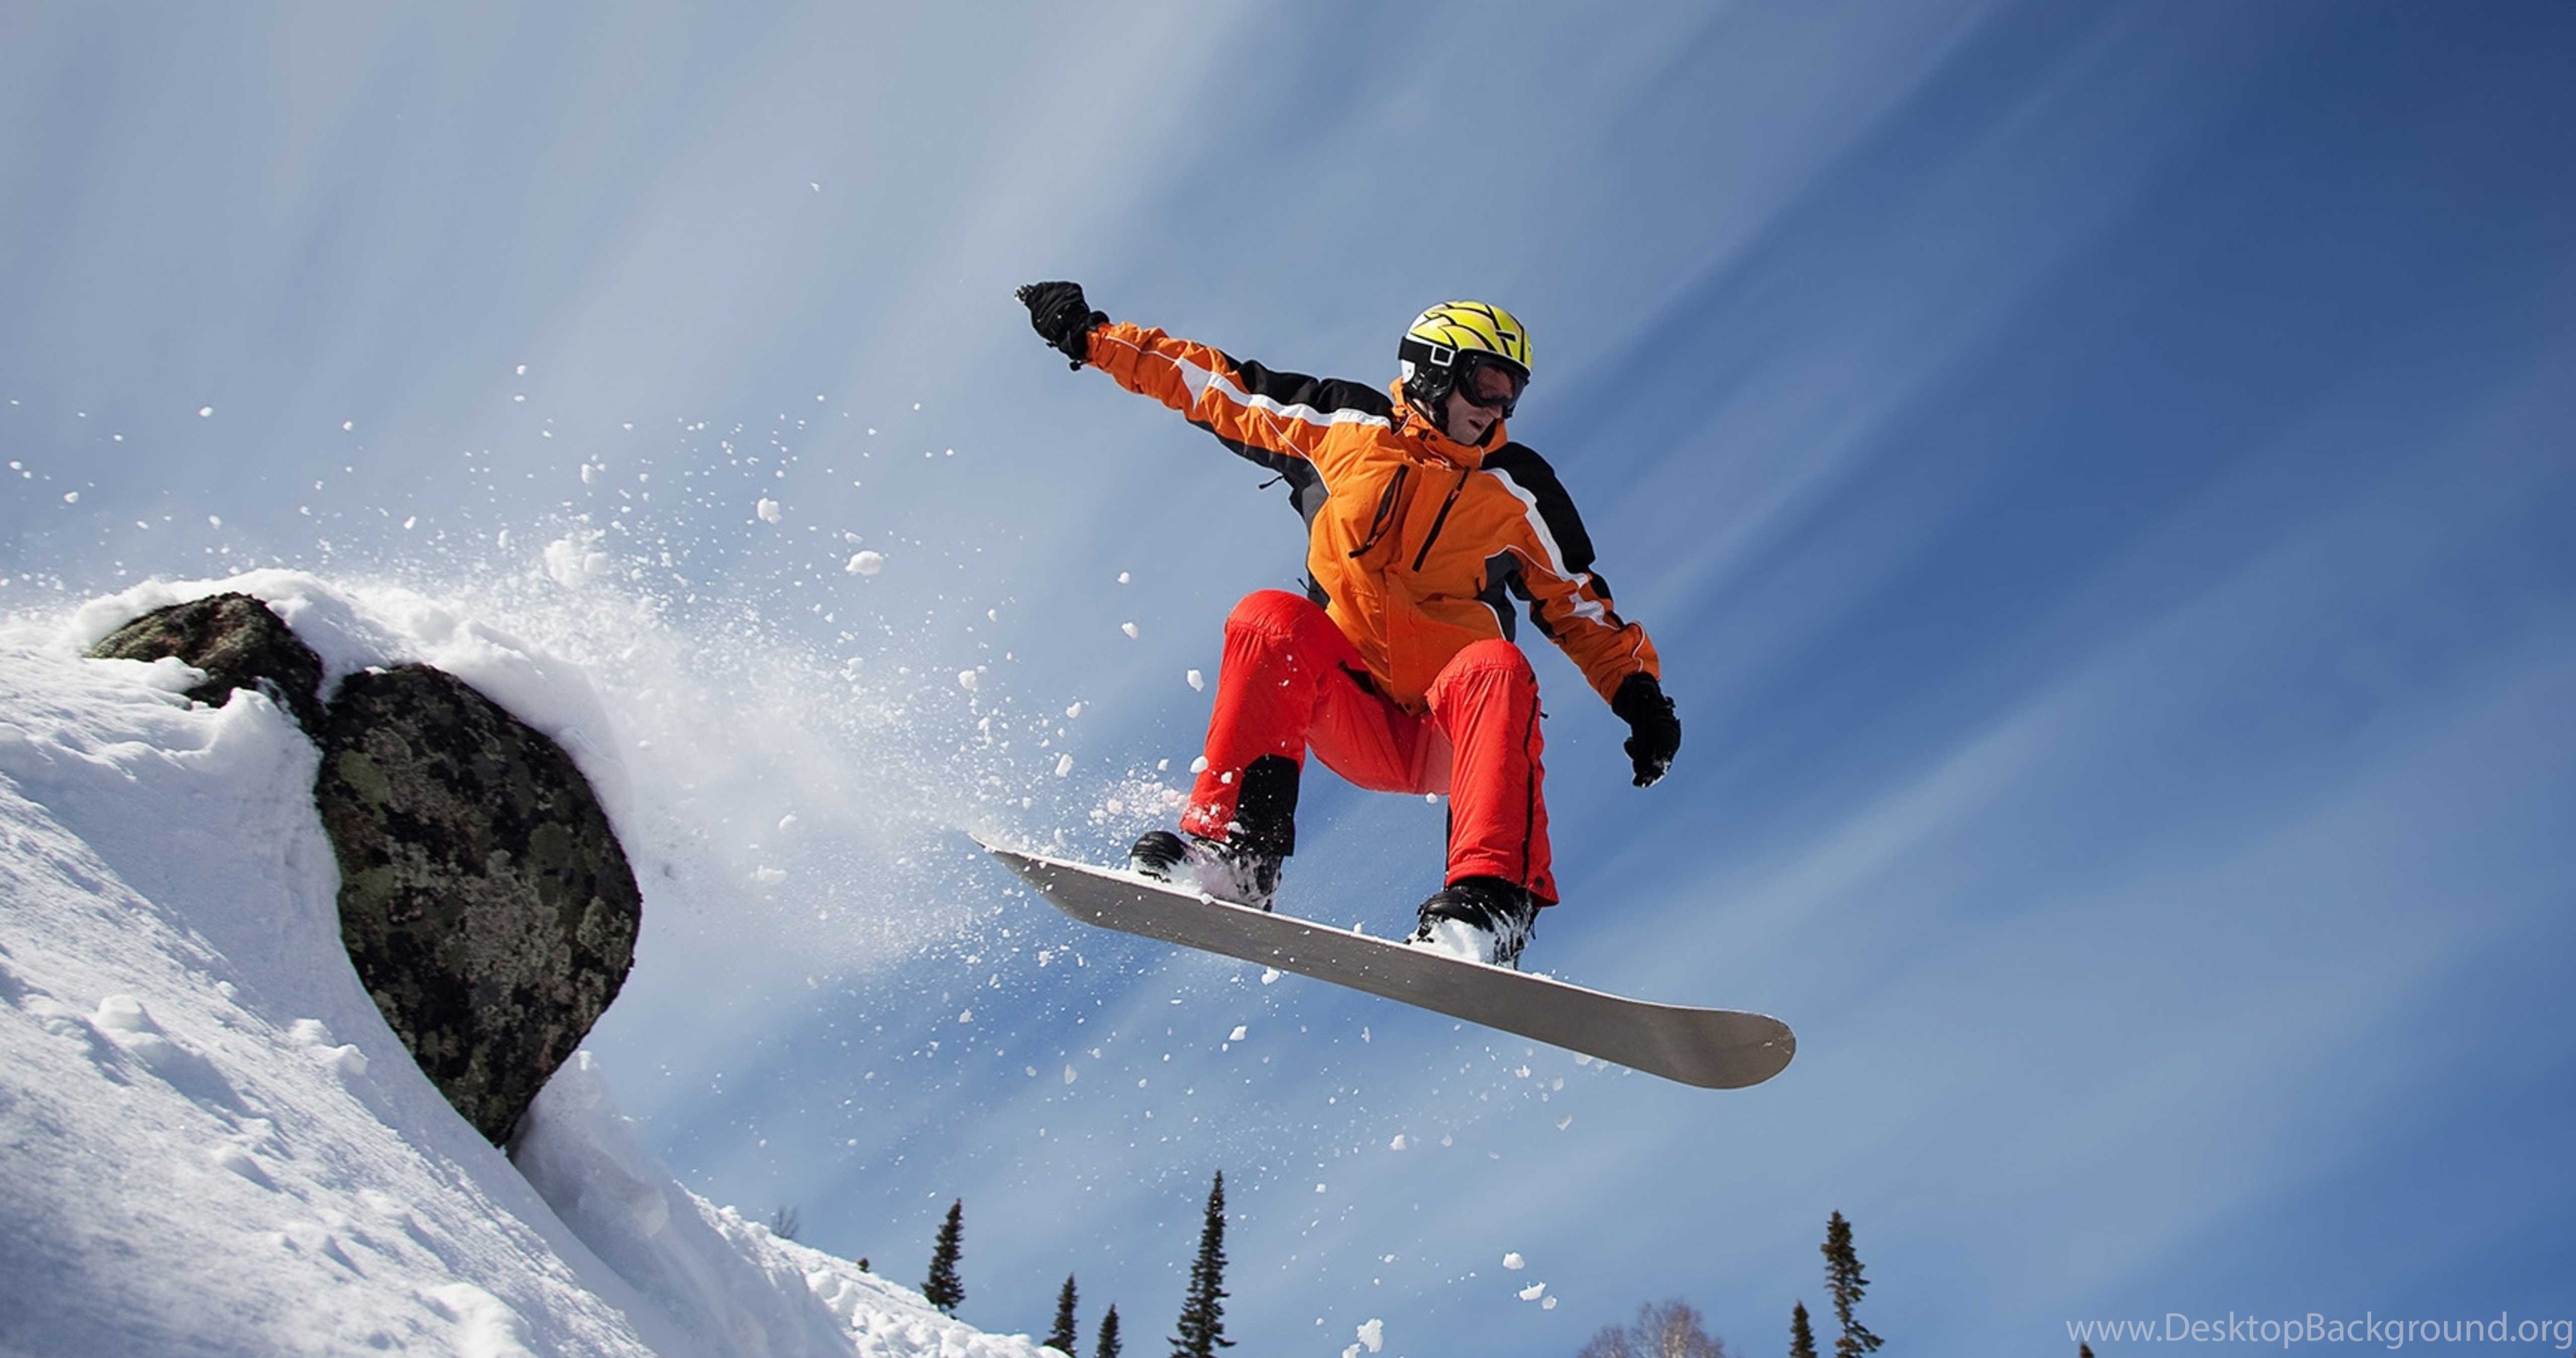 Skiing pictures. Даррен Пауэлл сноуборд. Зимний спорт. Сноубординг. Горнолыжный спорт.